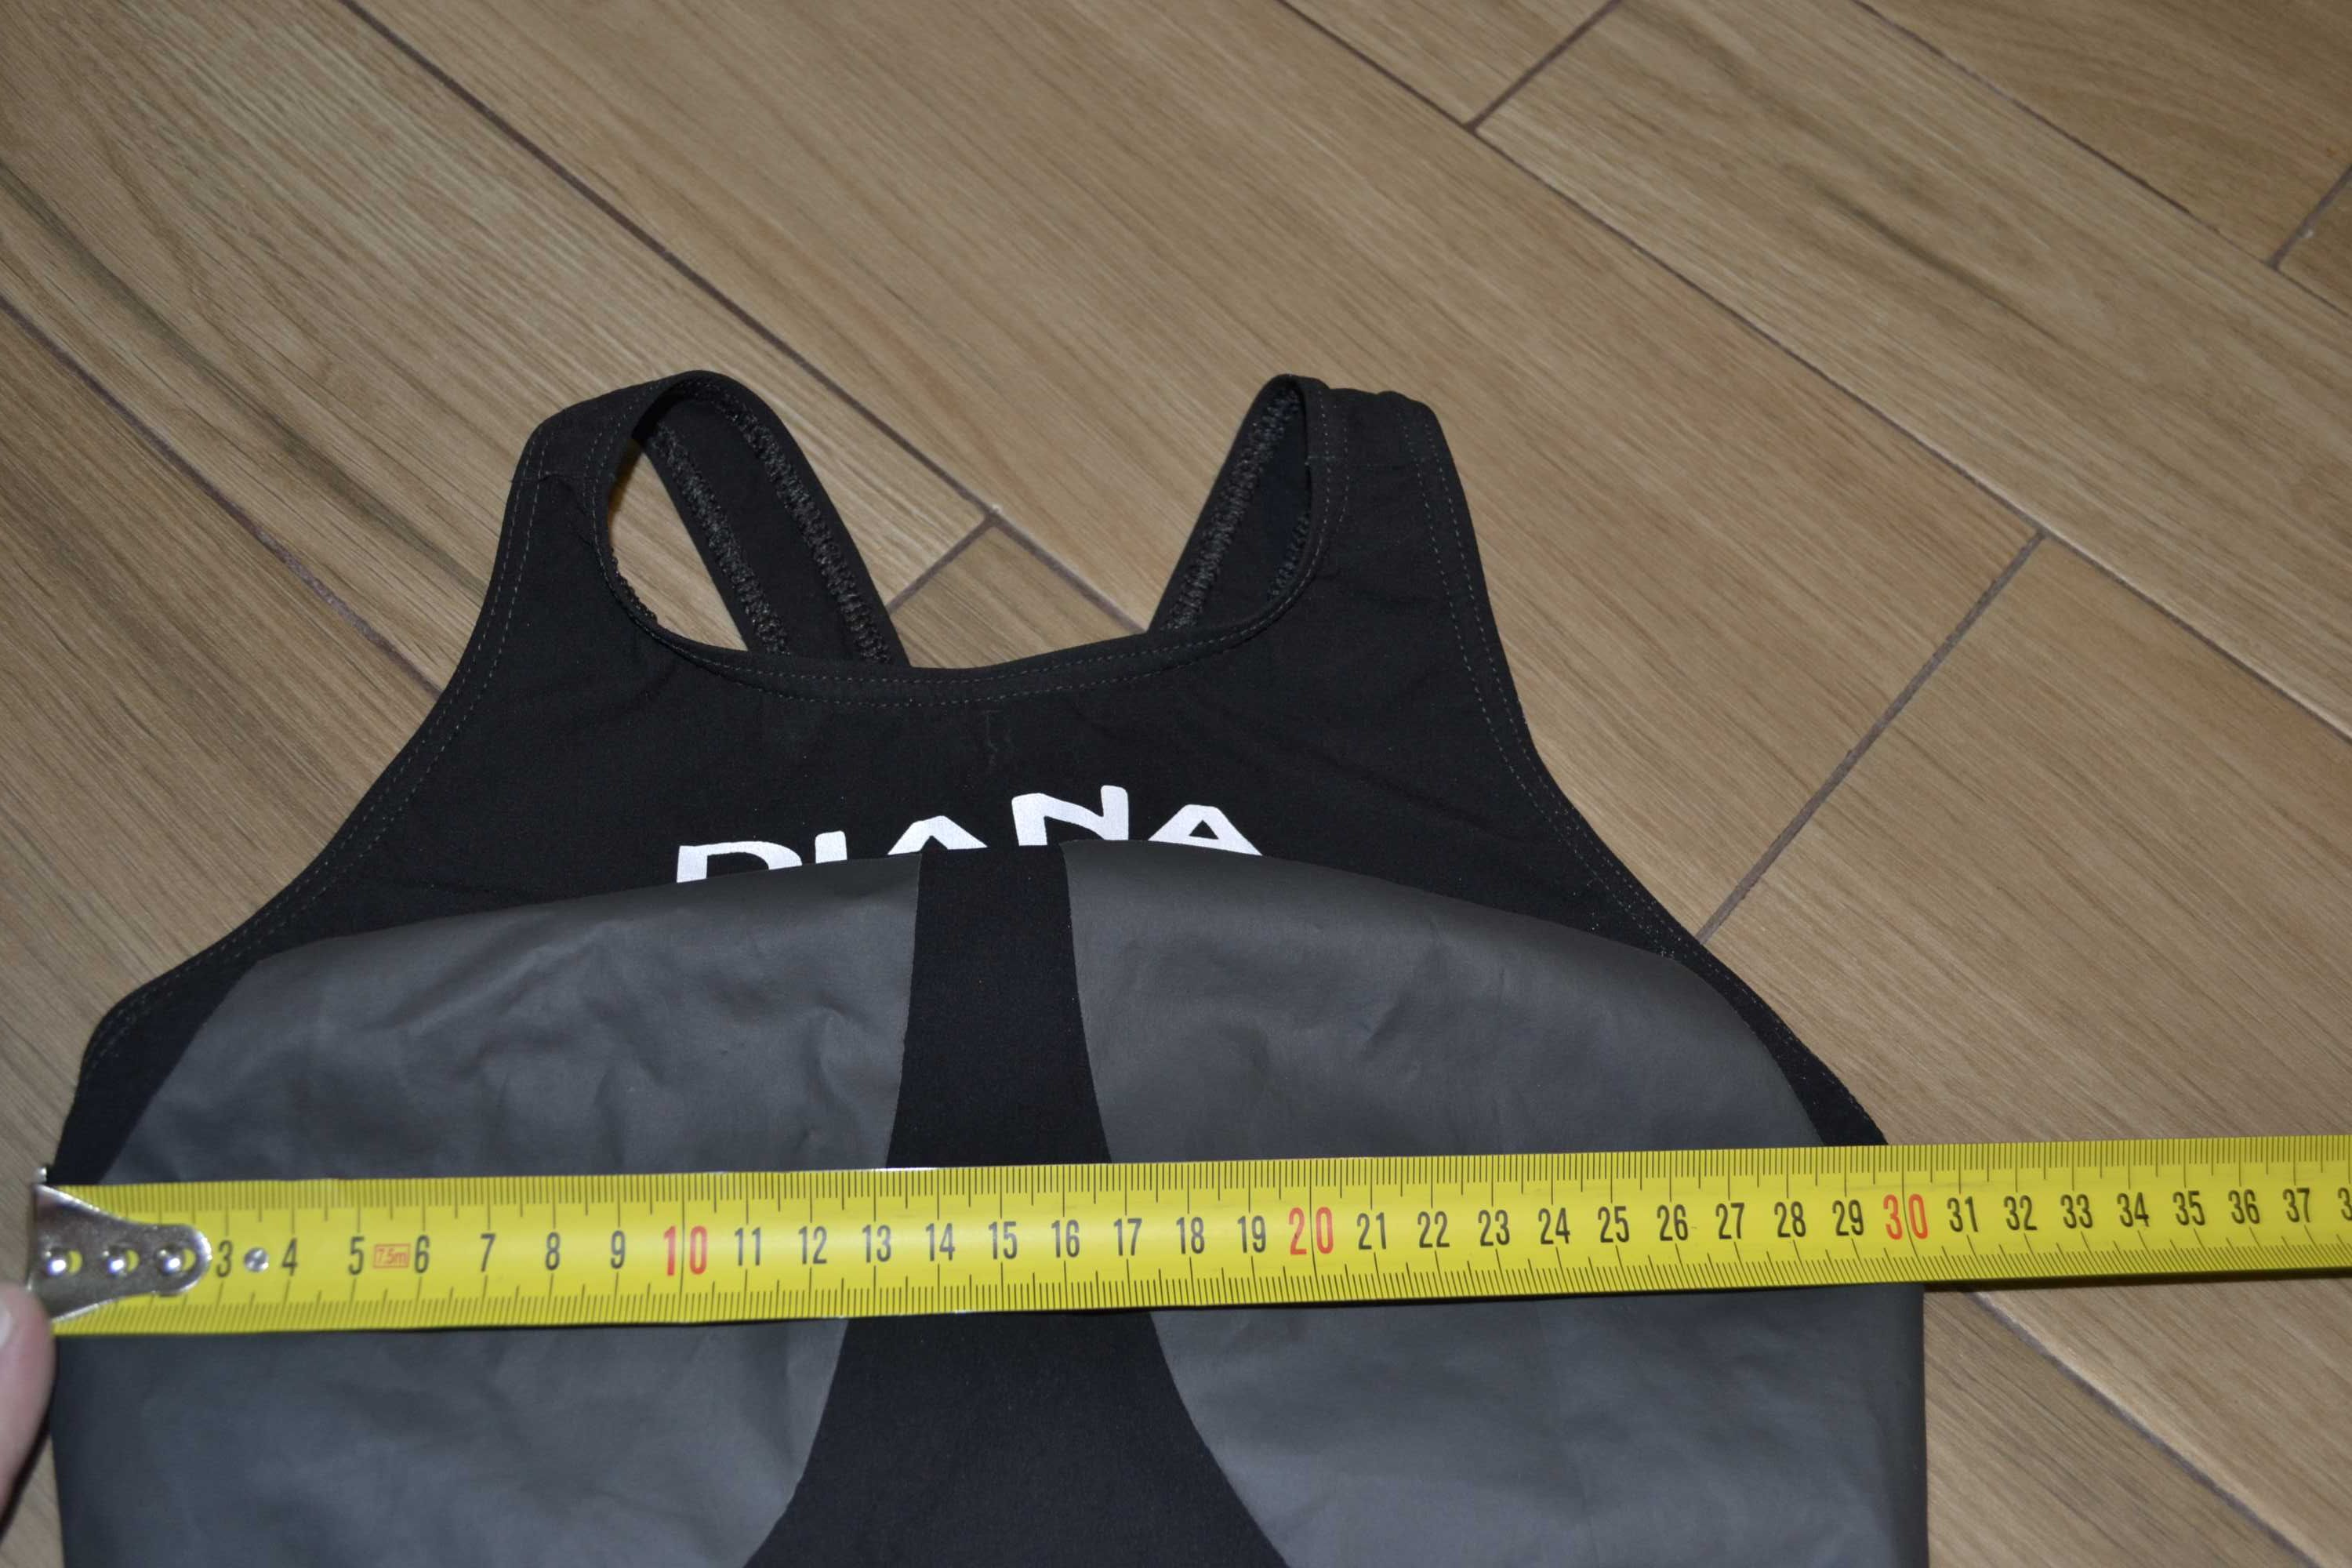 Стартовый гидрокостюм купальник Diana Italy S-M